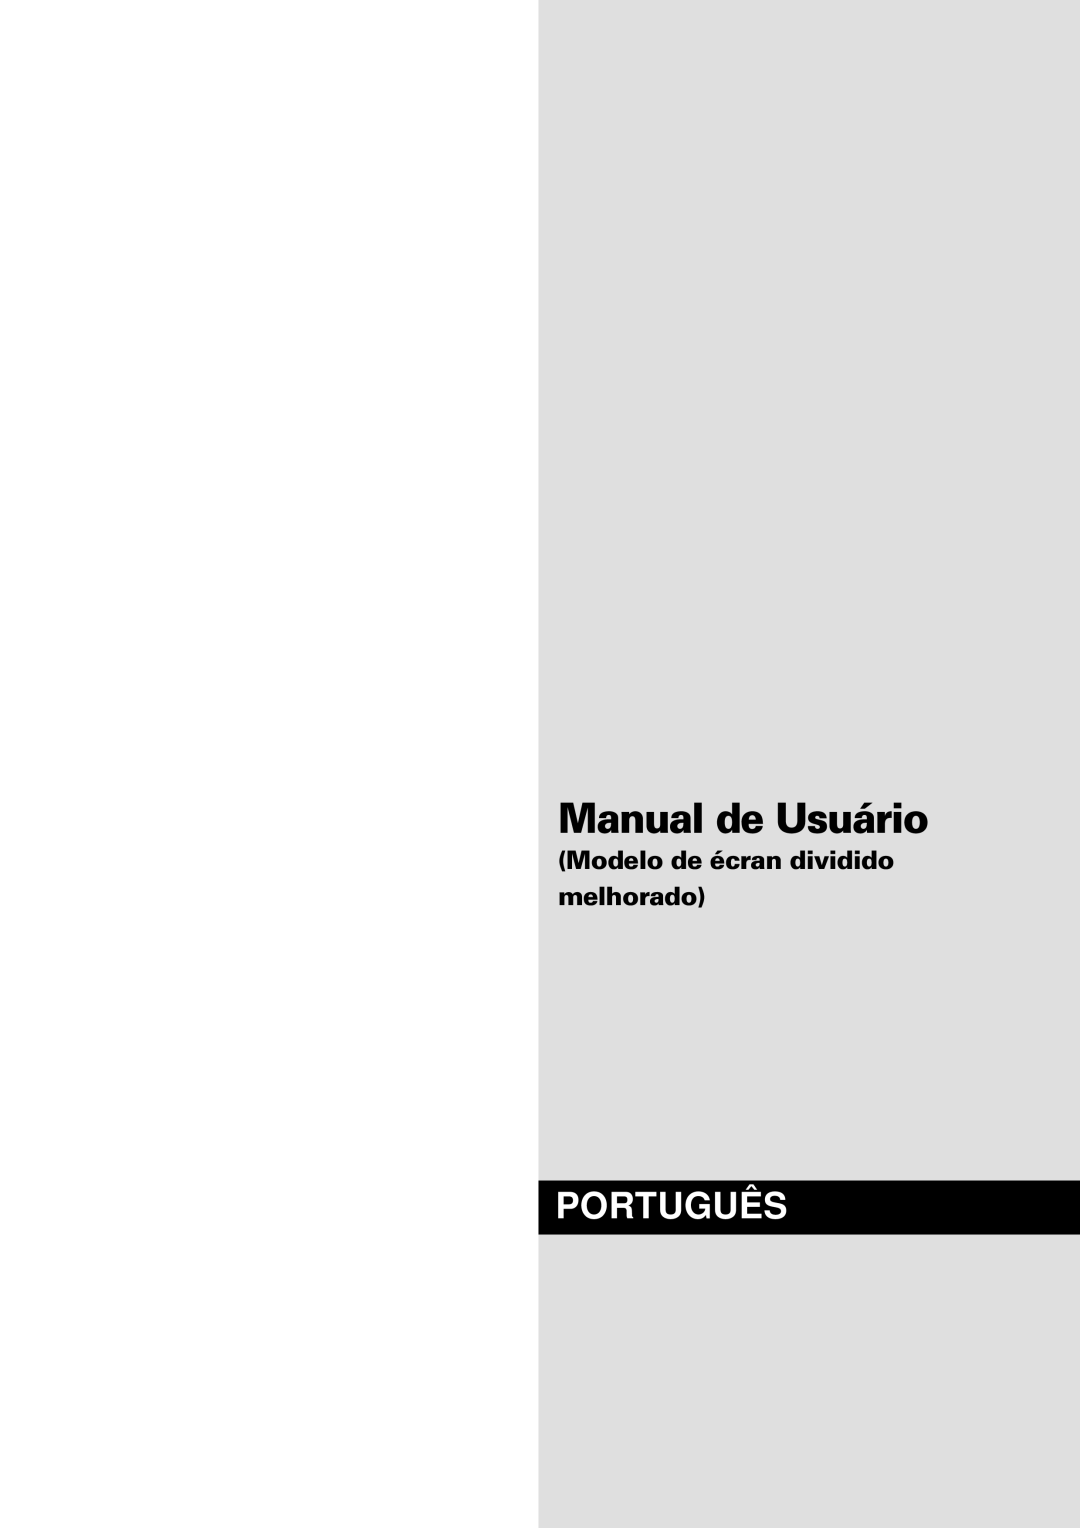 NEC PX-61XM4A, PX-42XM4A manual Manual de Usuário, Português, Modelo de écran dividido melhorado 